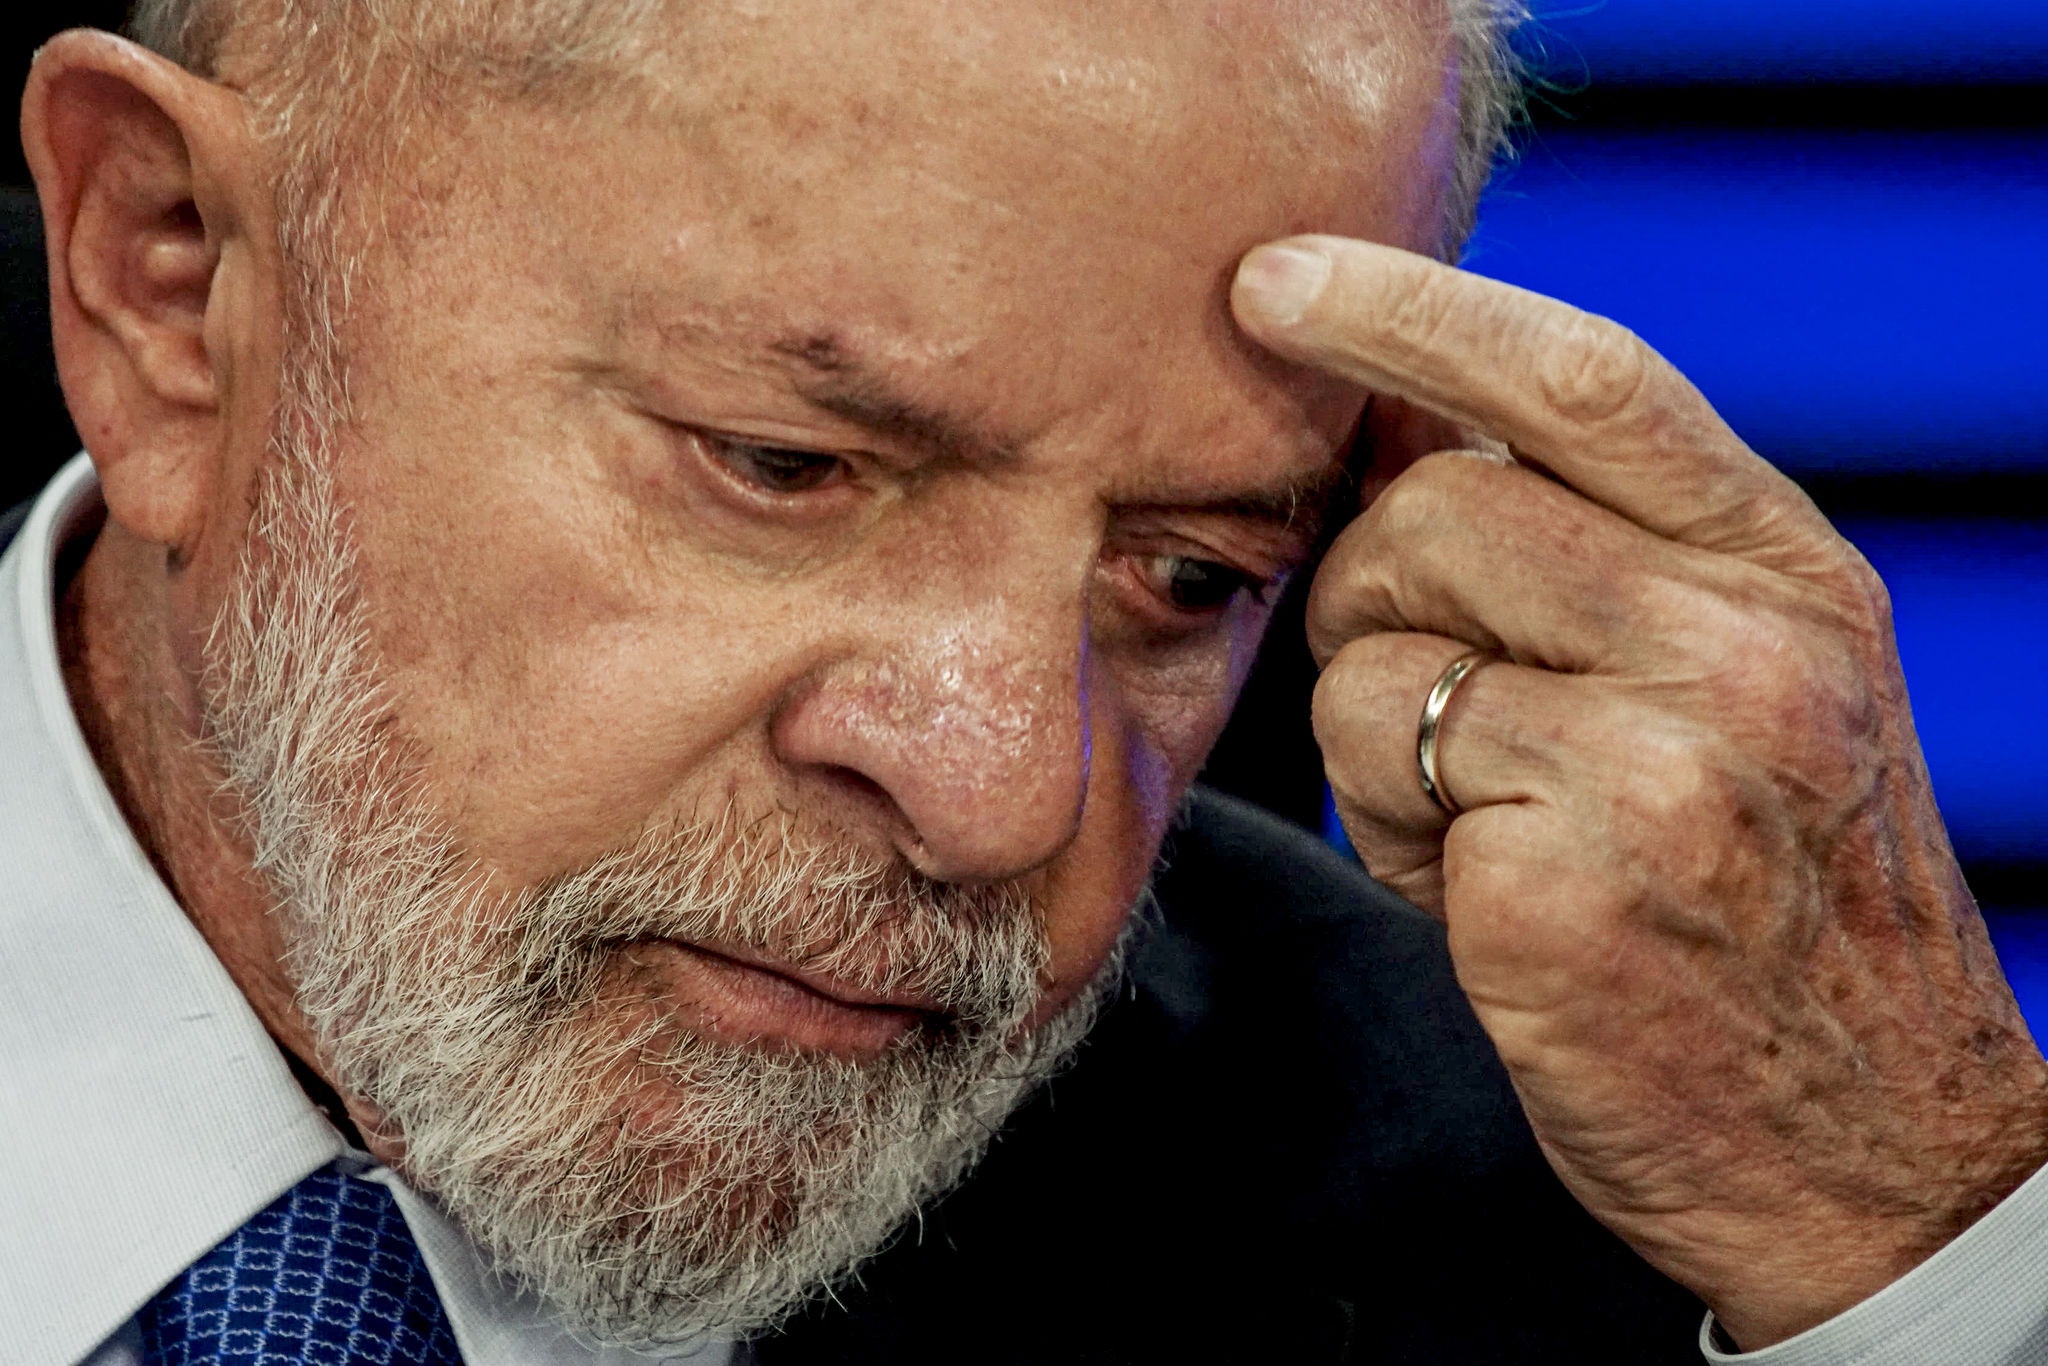 O presidente Luiz Inácio Lula da Silva (PT) foi o convidado do programa "Bom dia, presidente" nos estúdios da Empresa Brasil de Comunicação (EBC).